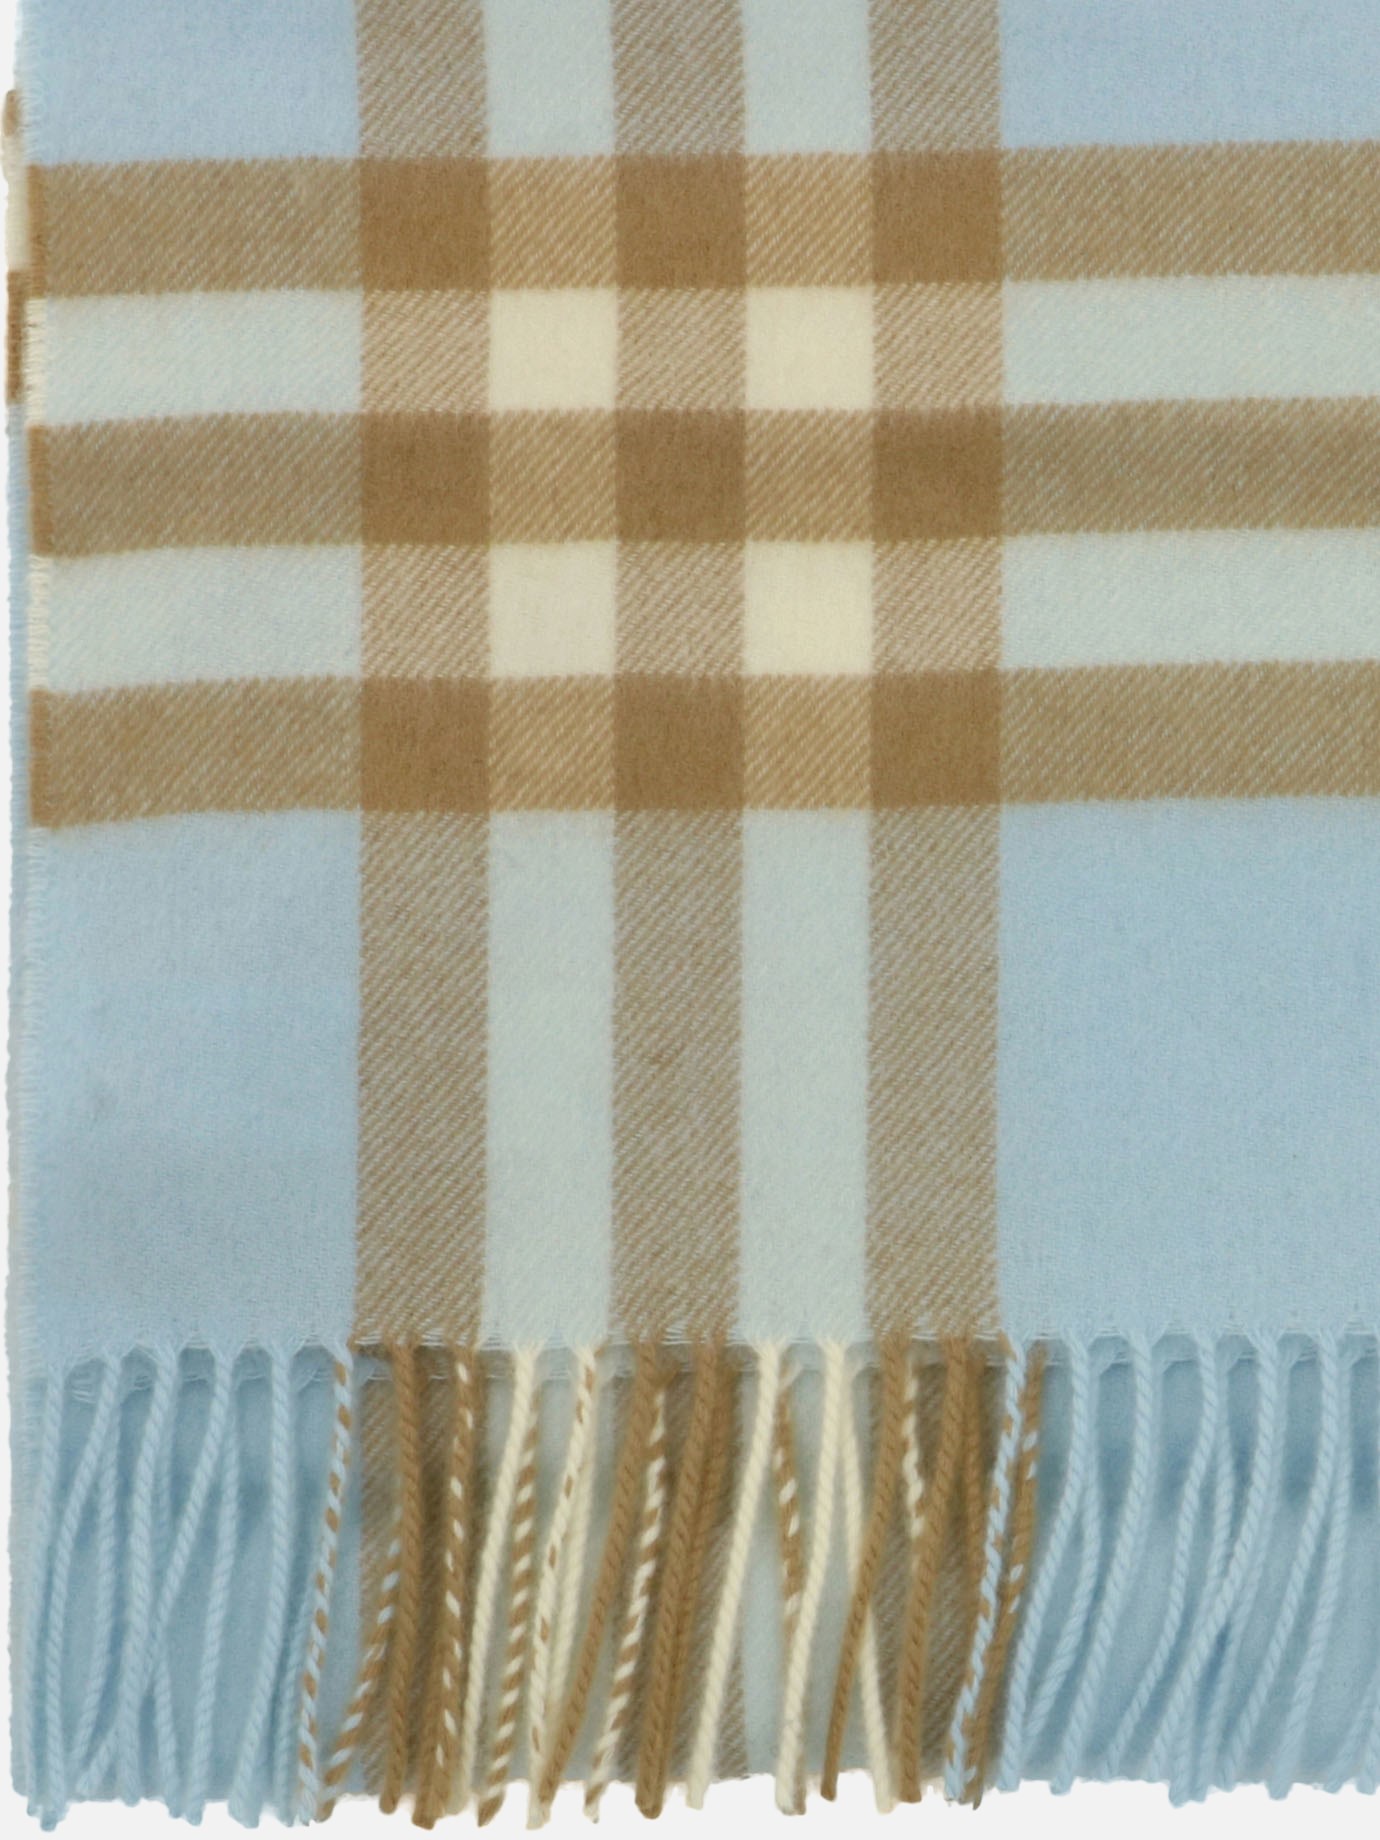 Tartan scarf by Burberry